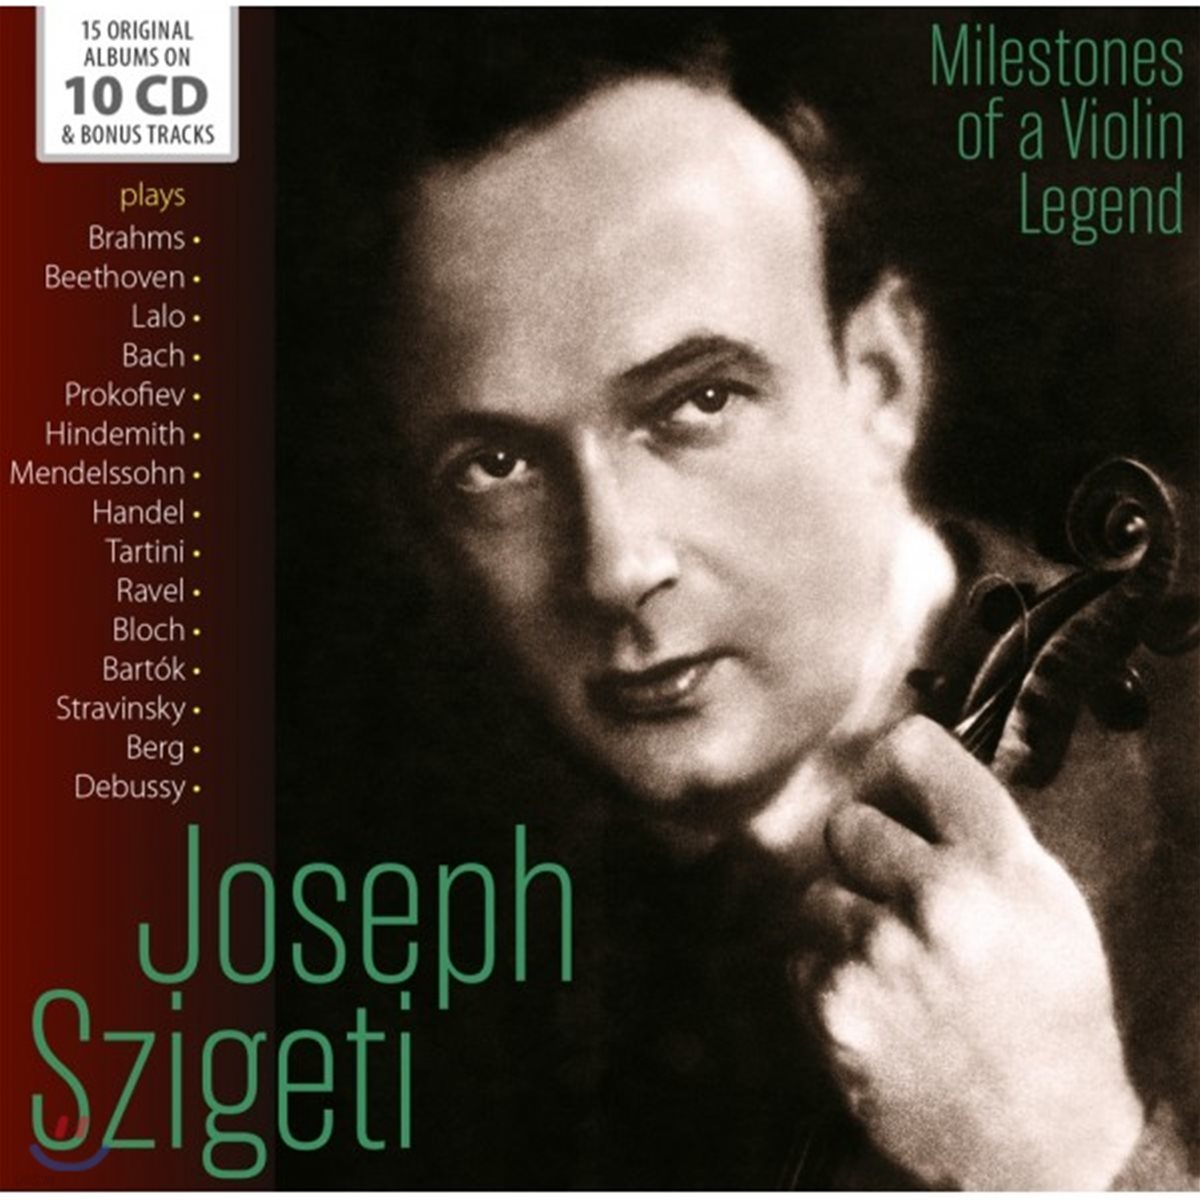 요제프 시게티 오리지널 앨범 컬렉션 (Joseph Szigeti: Milestones Of a Violin Legend) 